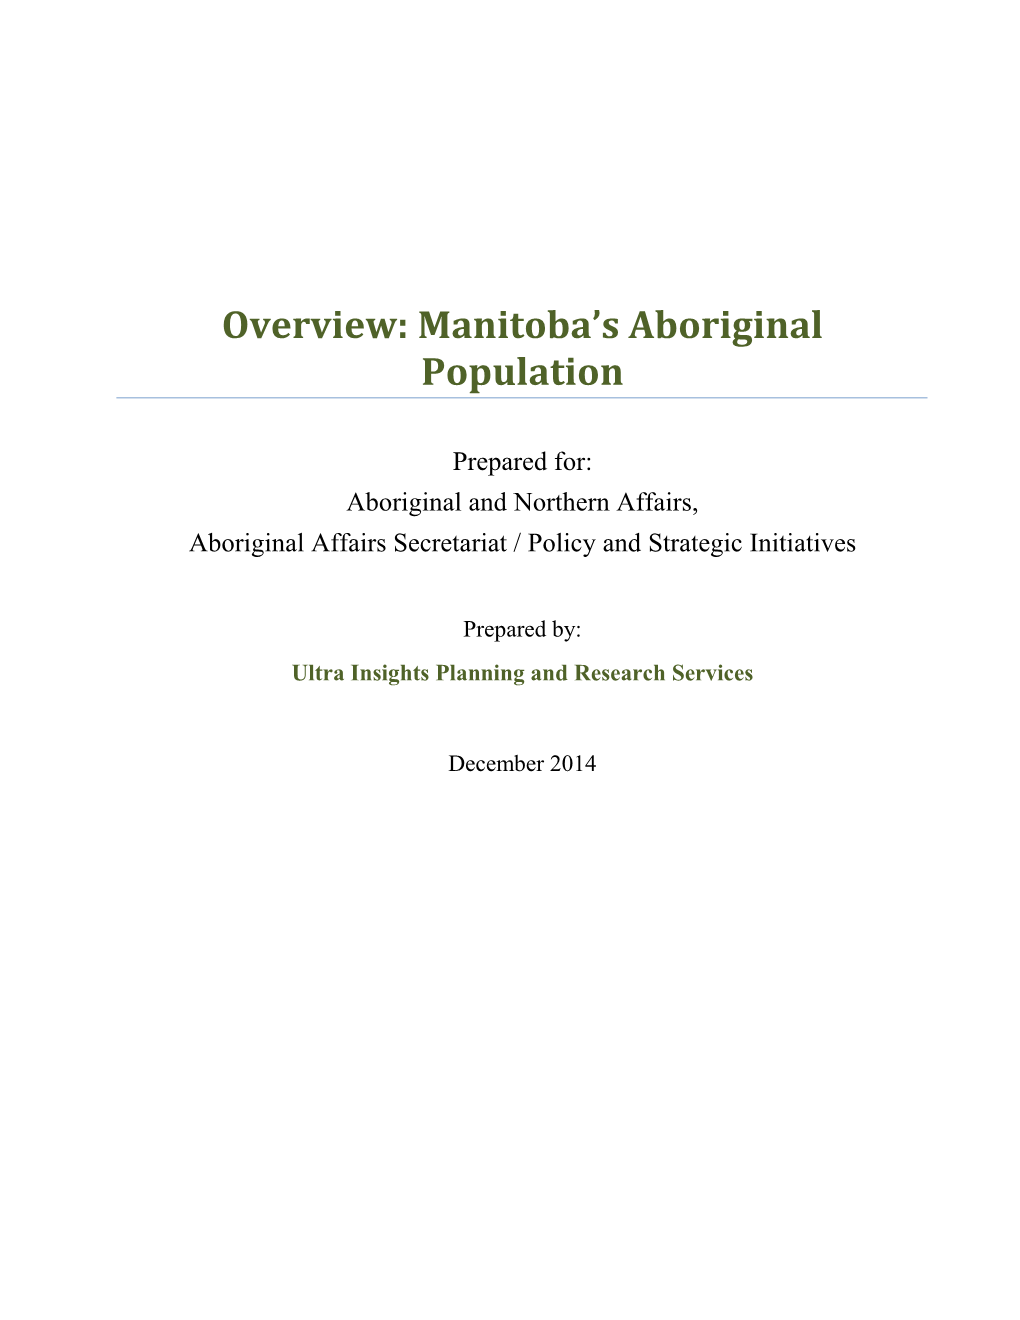 Overview: Manitoba's Aboriginal Population